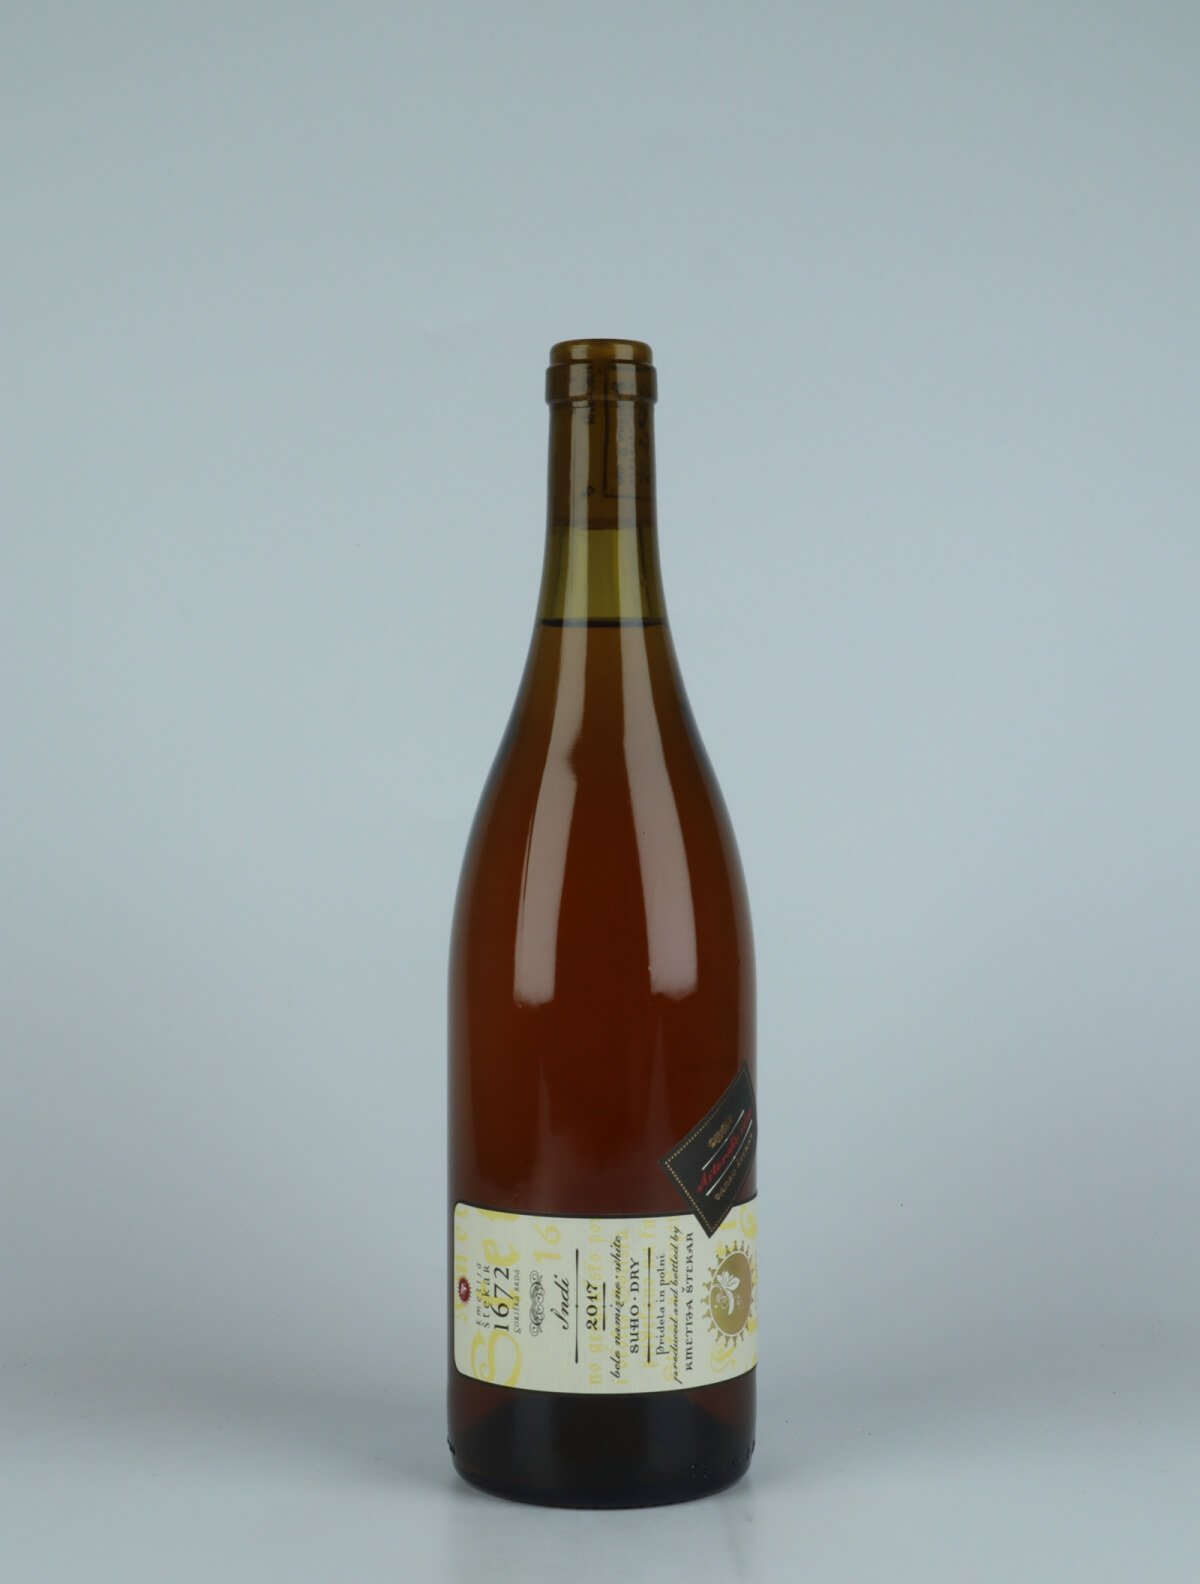 A bottle 2017 Indi Orange wine from Kmetija Stekar, Brda in Slovenia